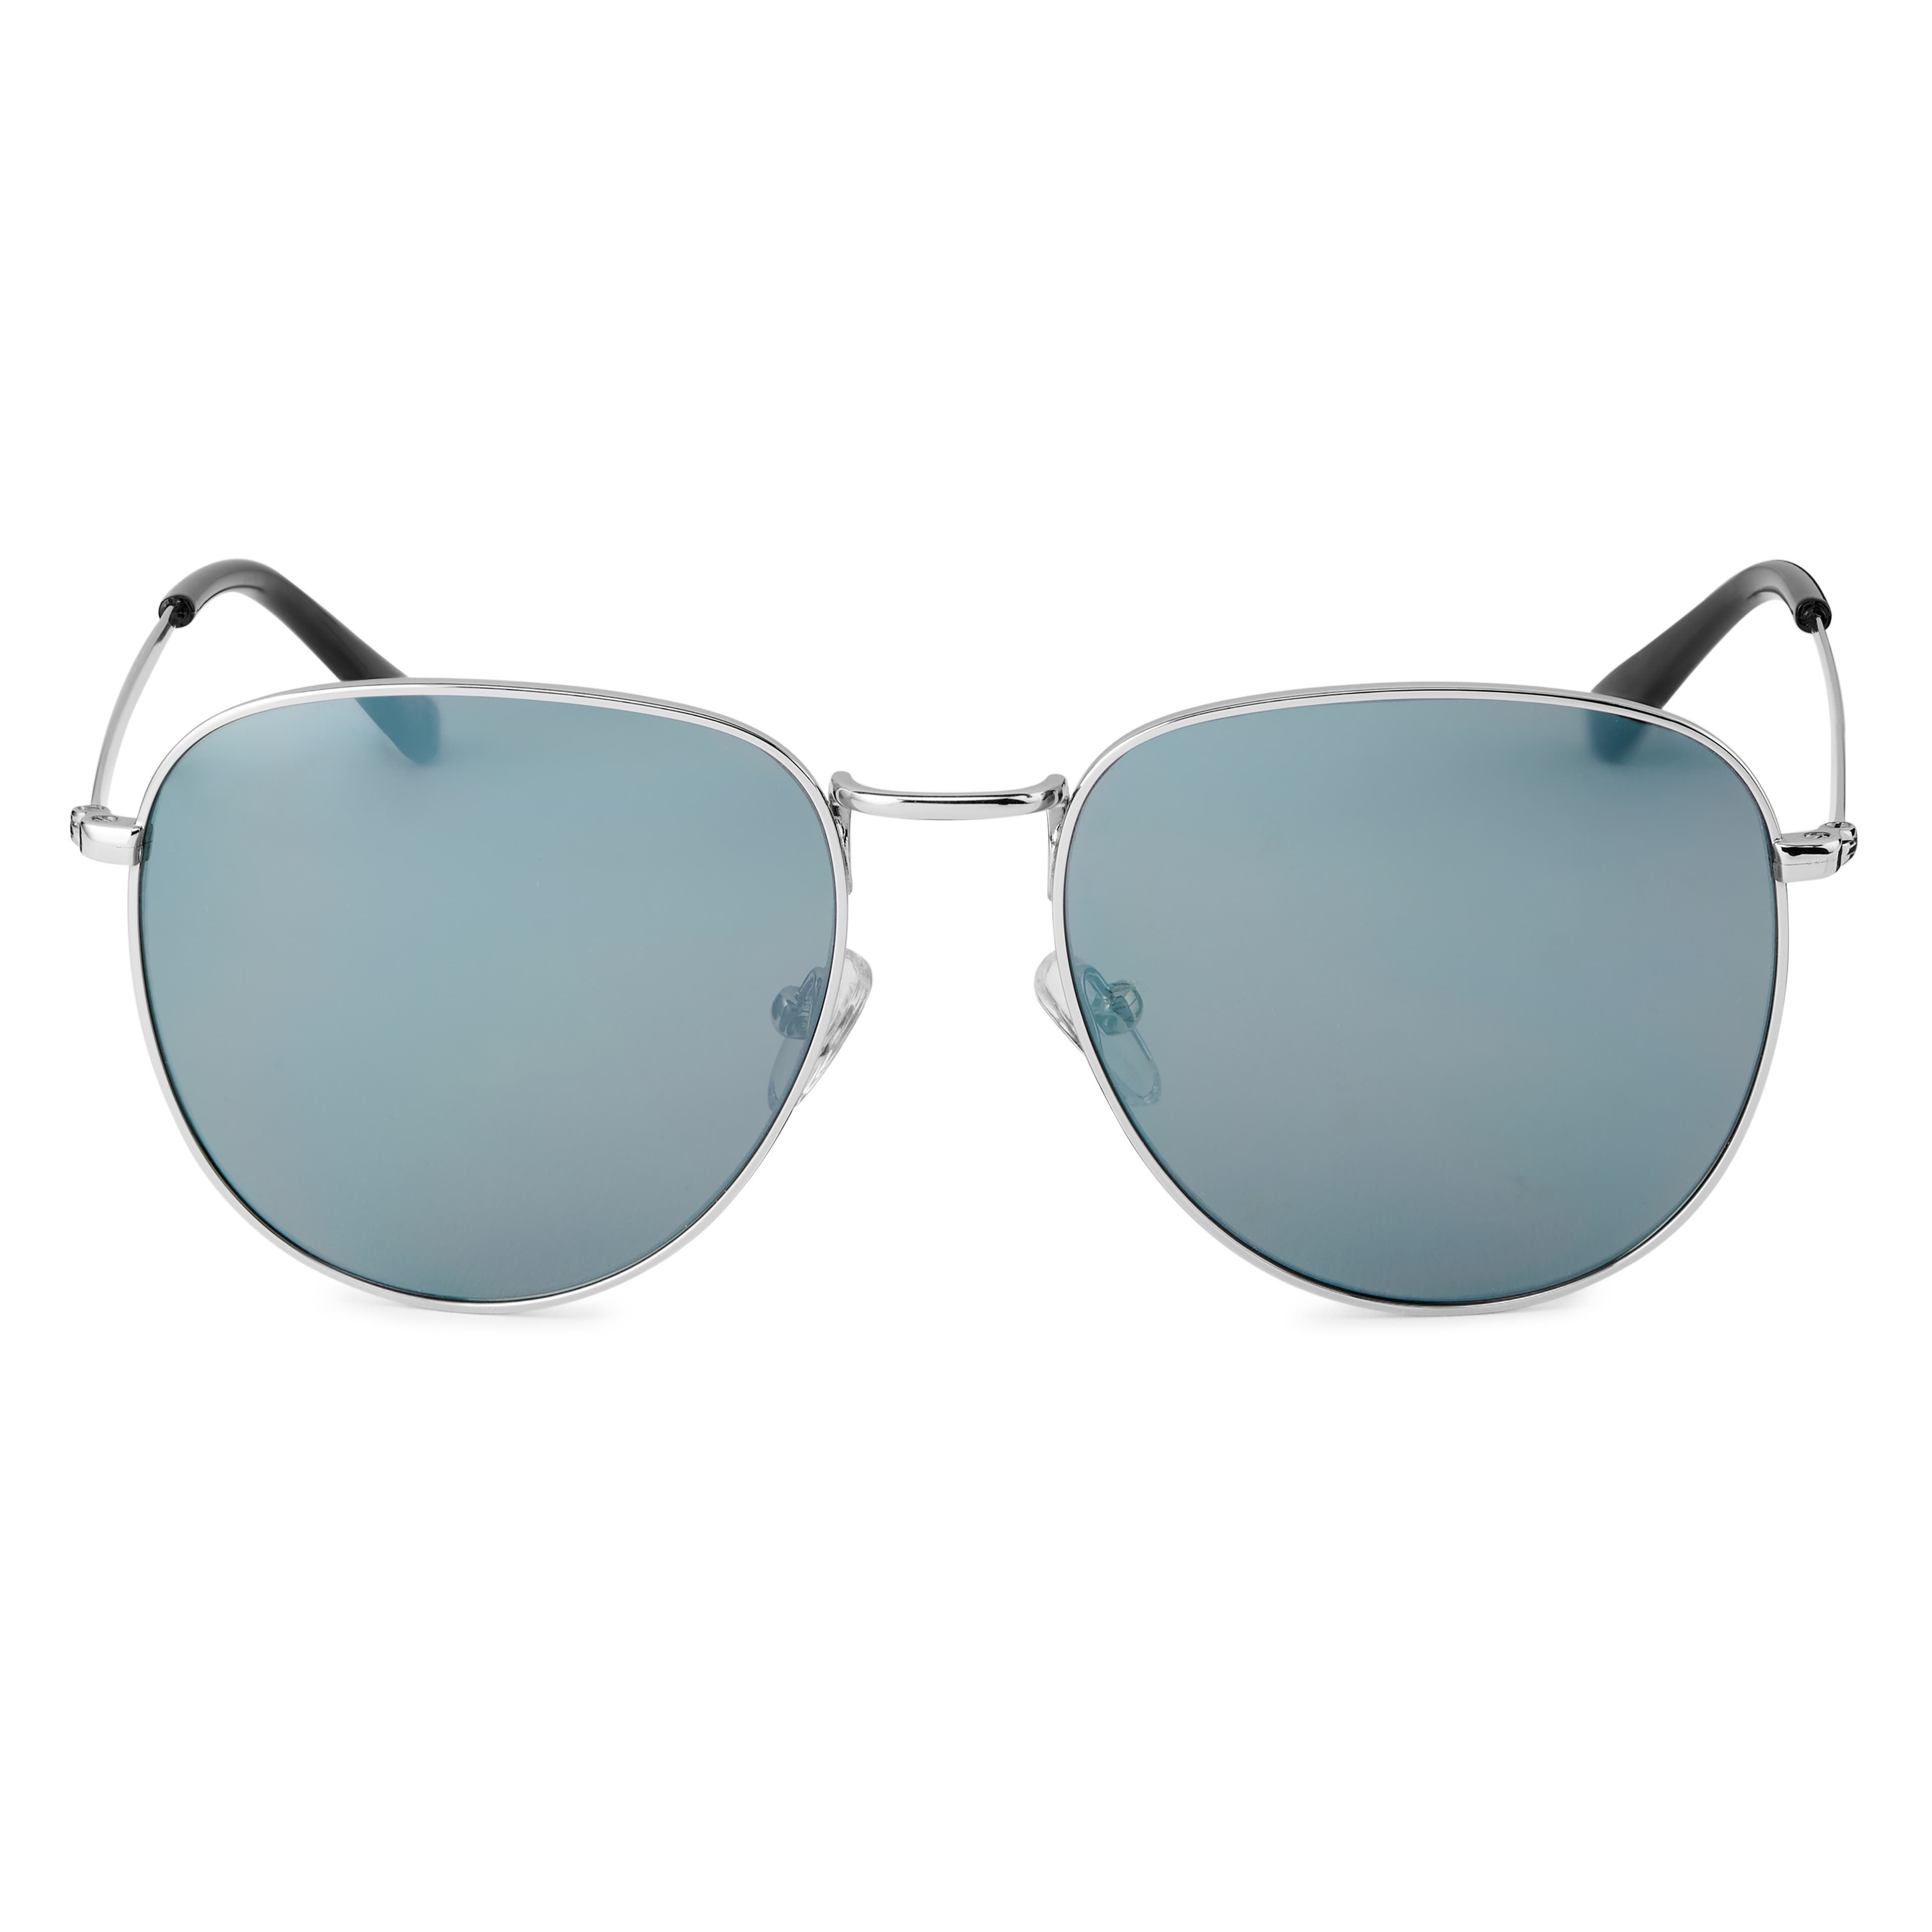 Слънчеви очила със сребристи рамки и сиви авиаторски стъкла Wells Thea